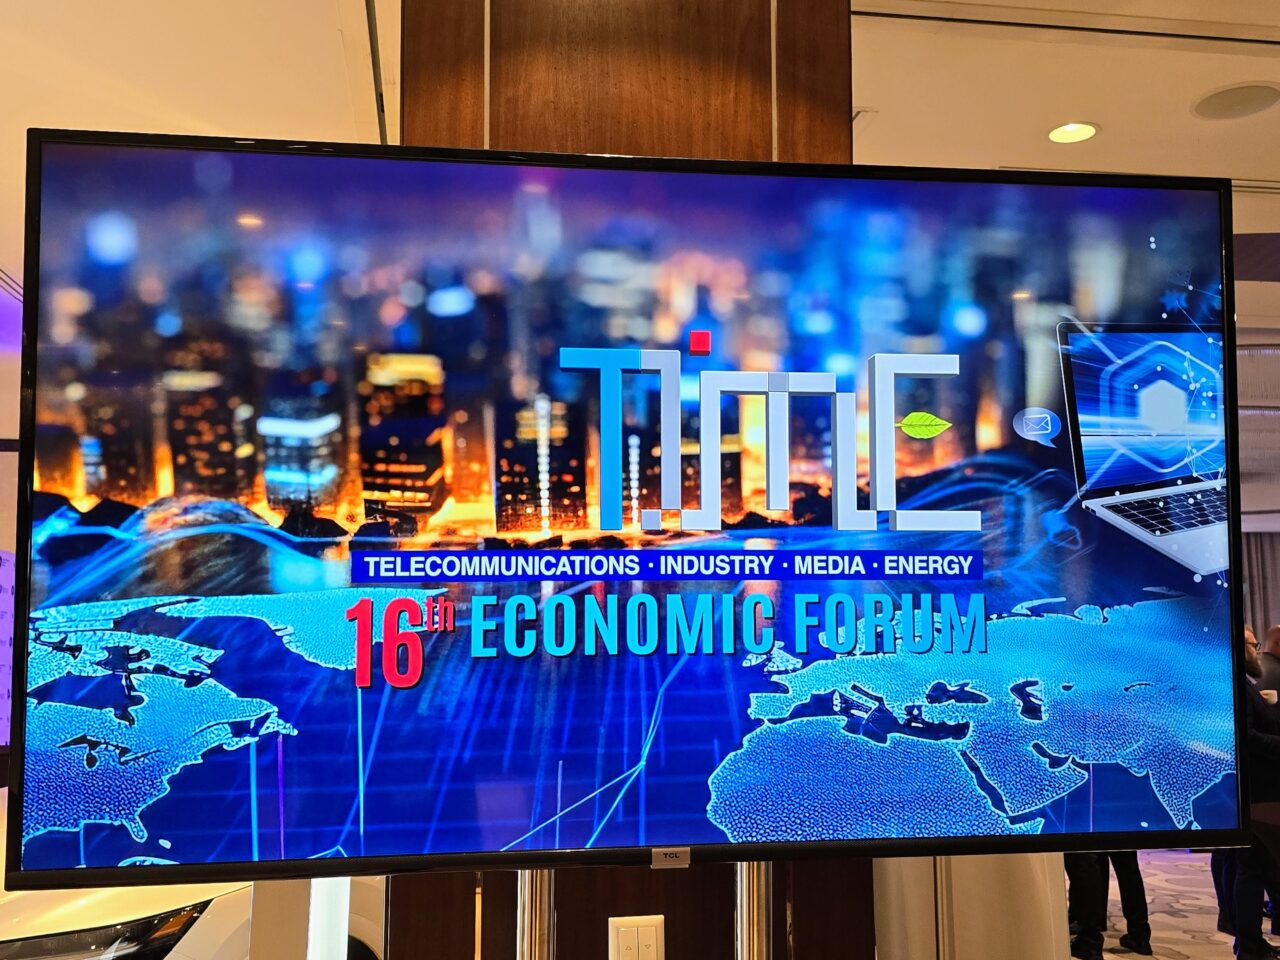 Ekran prezentacyjny 16. Forum Ekonomicznego Time (FG Time) z grafiką przedstawiającą zarysy mapy świata oraz symbole telekomunikacji, przemysłu, mediów i energii na tle rozmytego zdjęcia nocnego miasta.